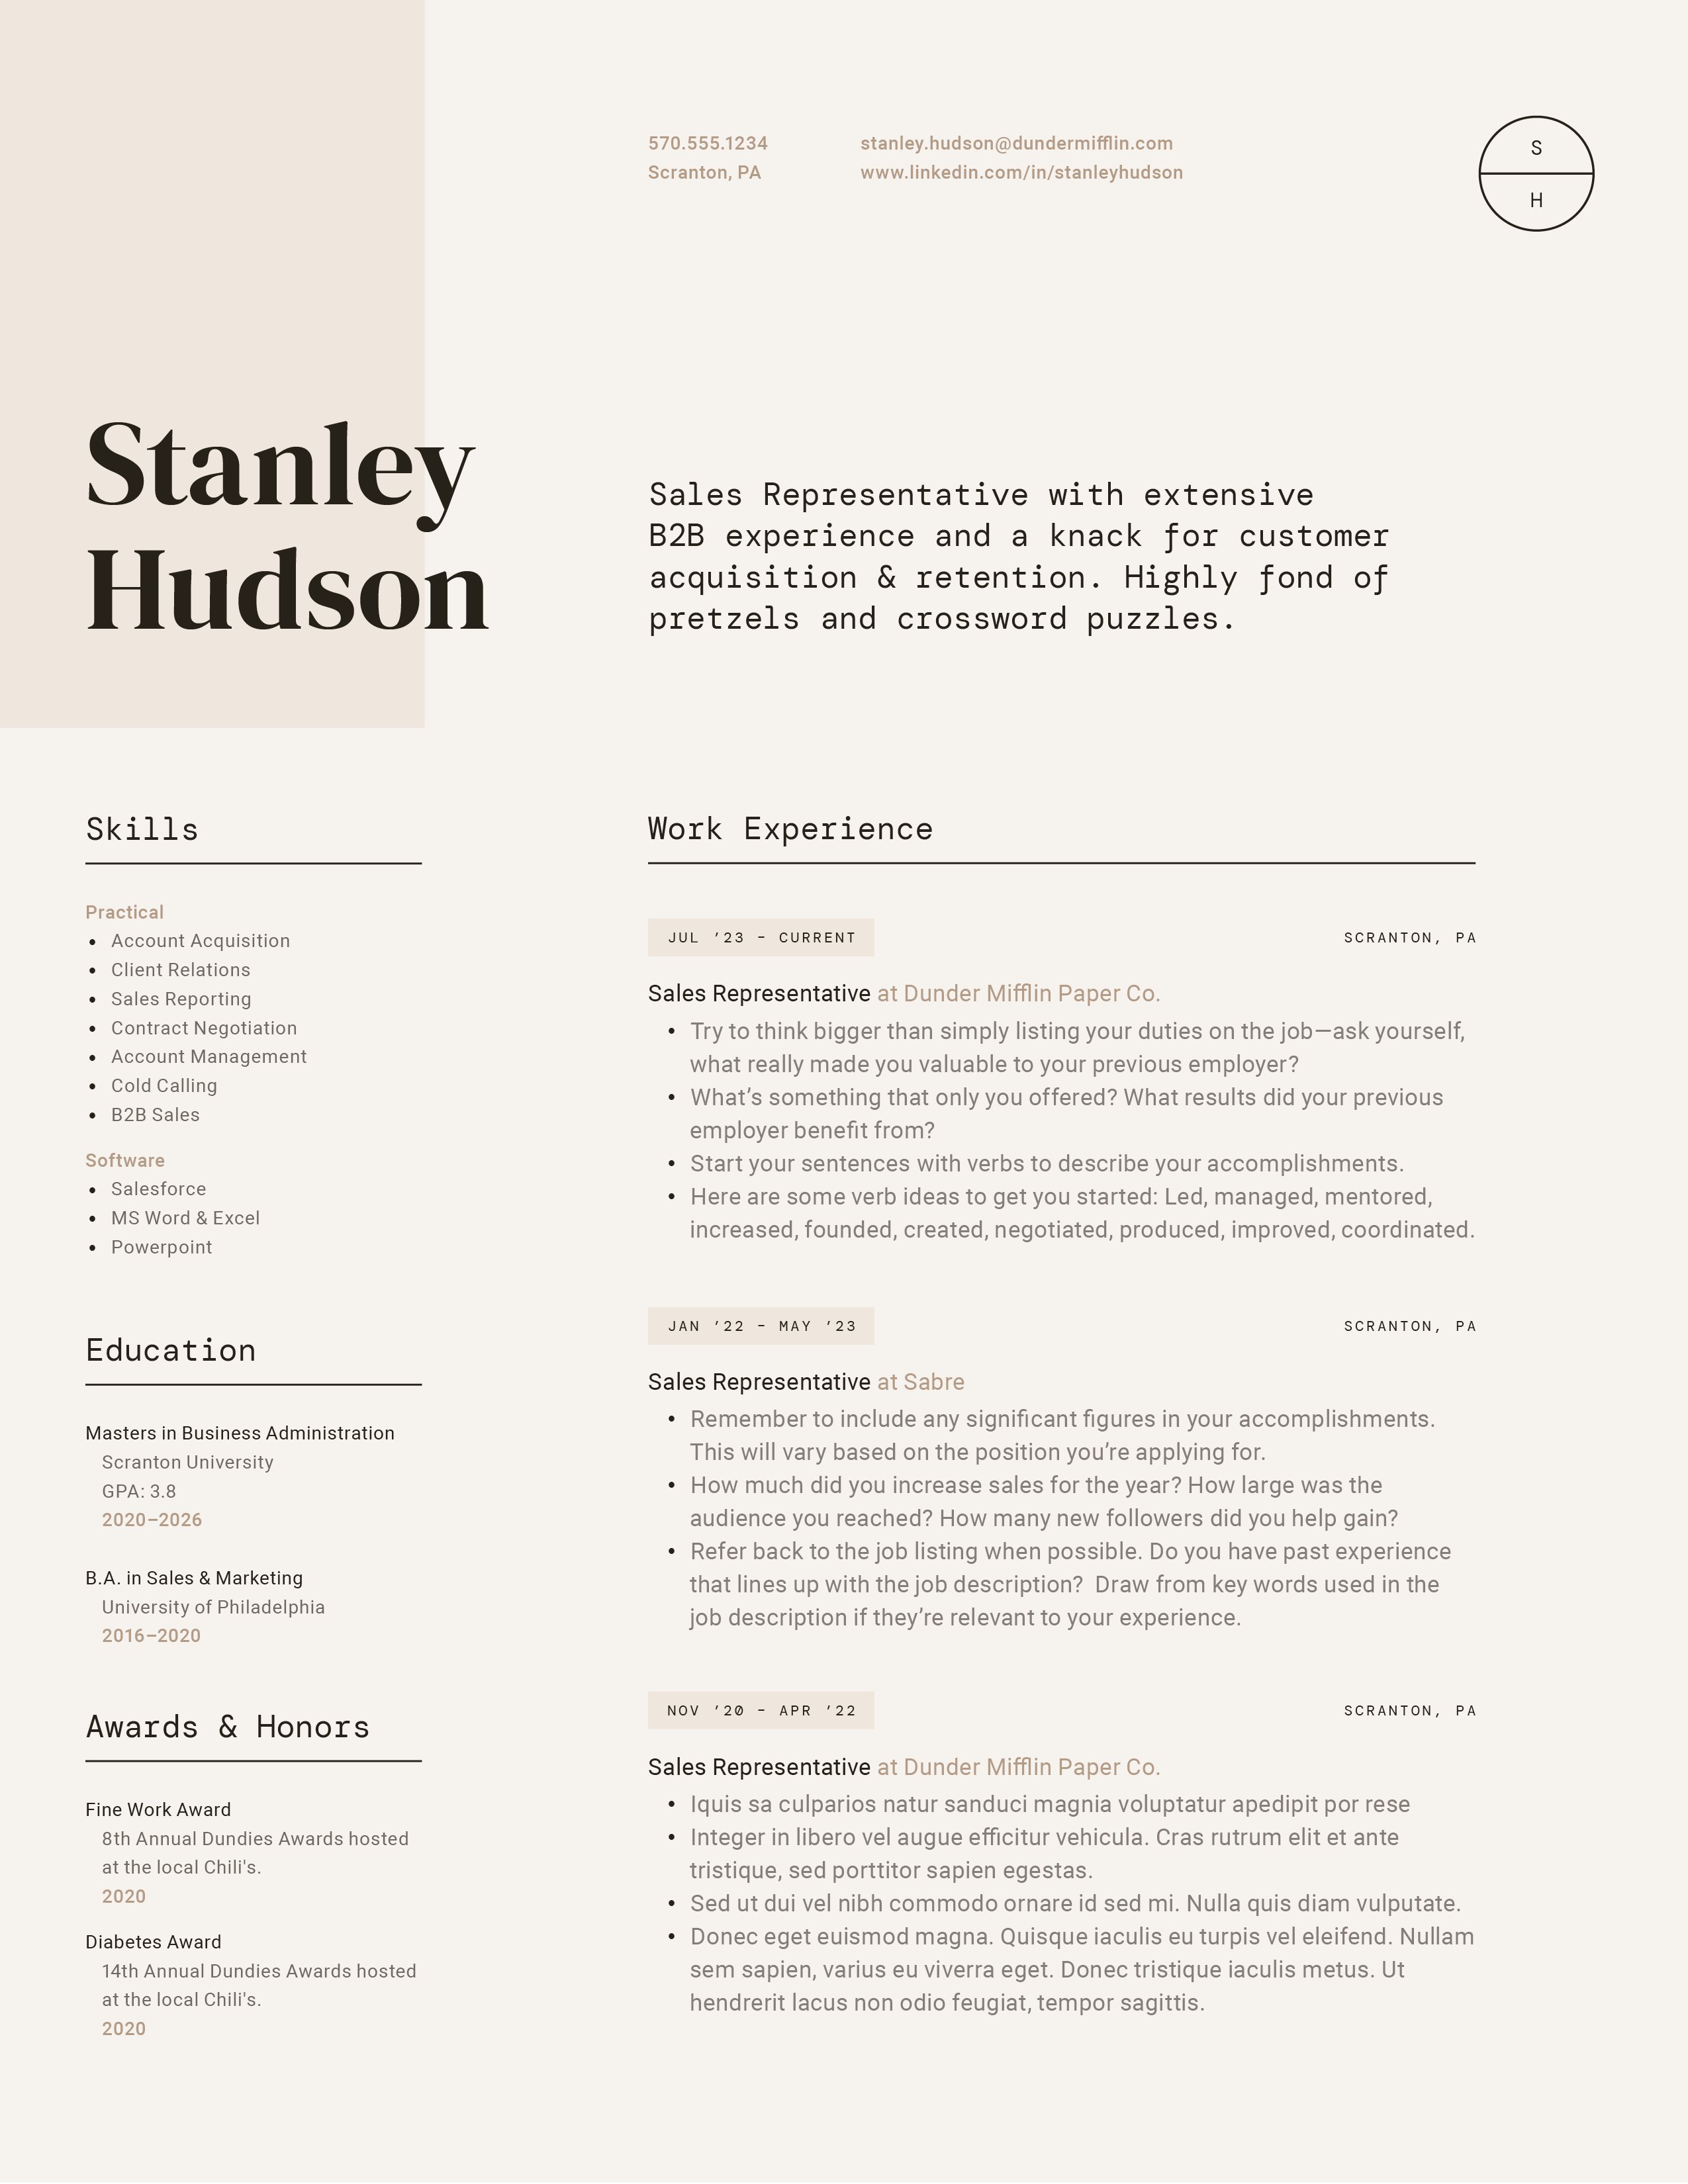 resume more profesh stanley hudson 1 981